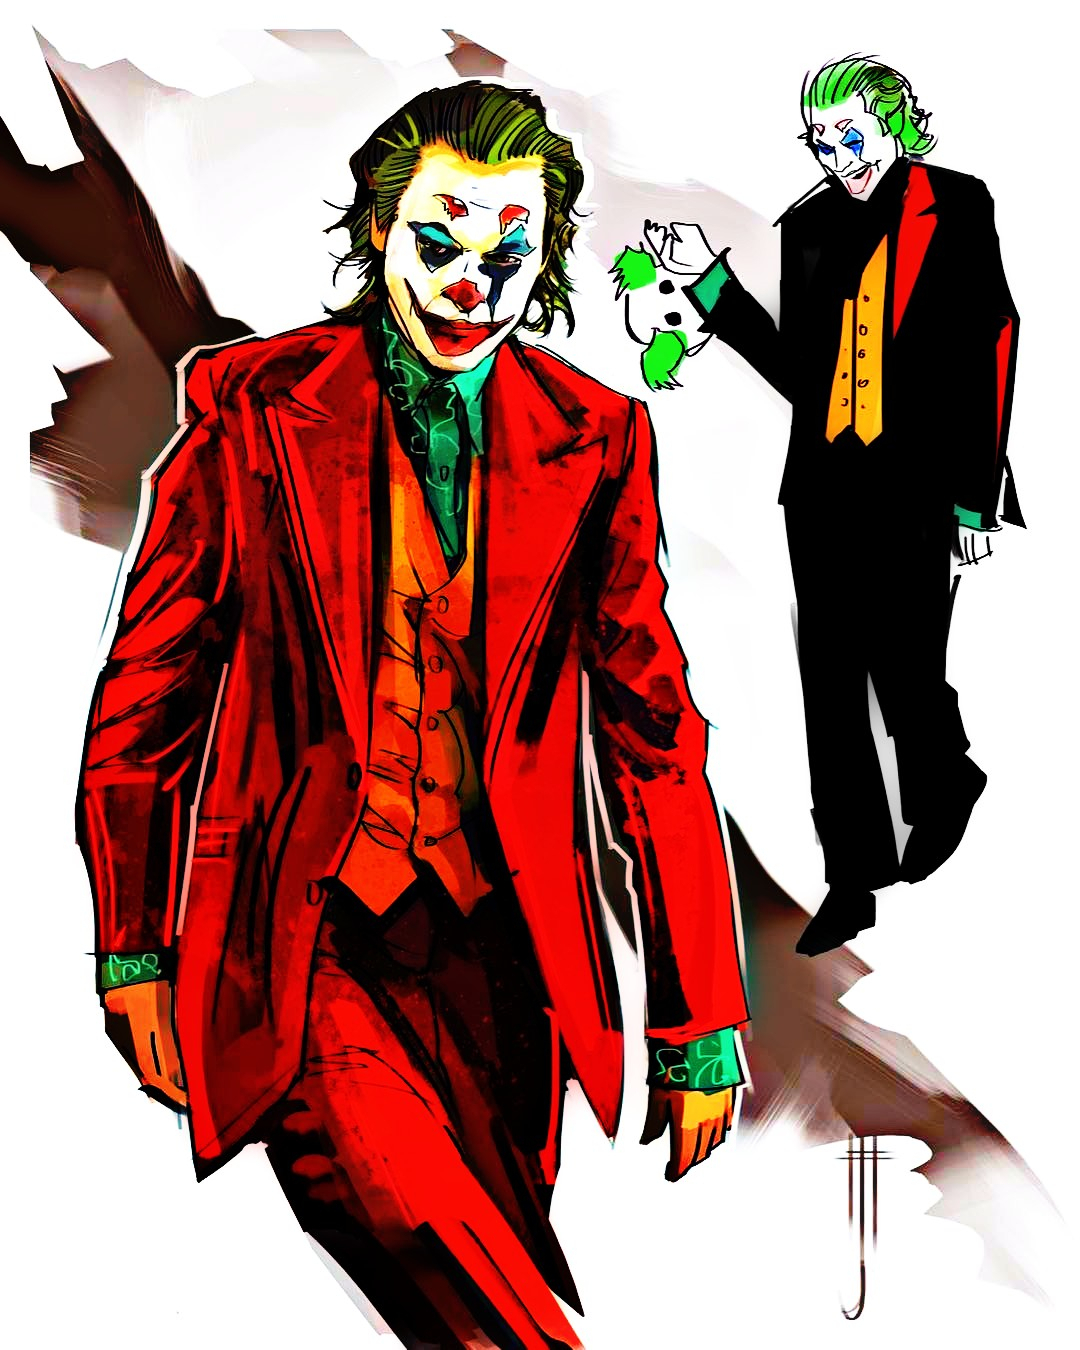 Joker Fan Art! Joker 2019 Jared Leto Joker Joker2019 Ja intérieur Joker Dessin Coloriage Joker 2019